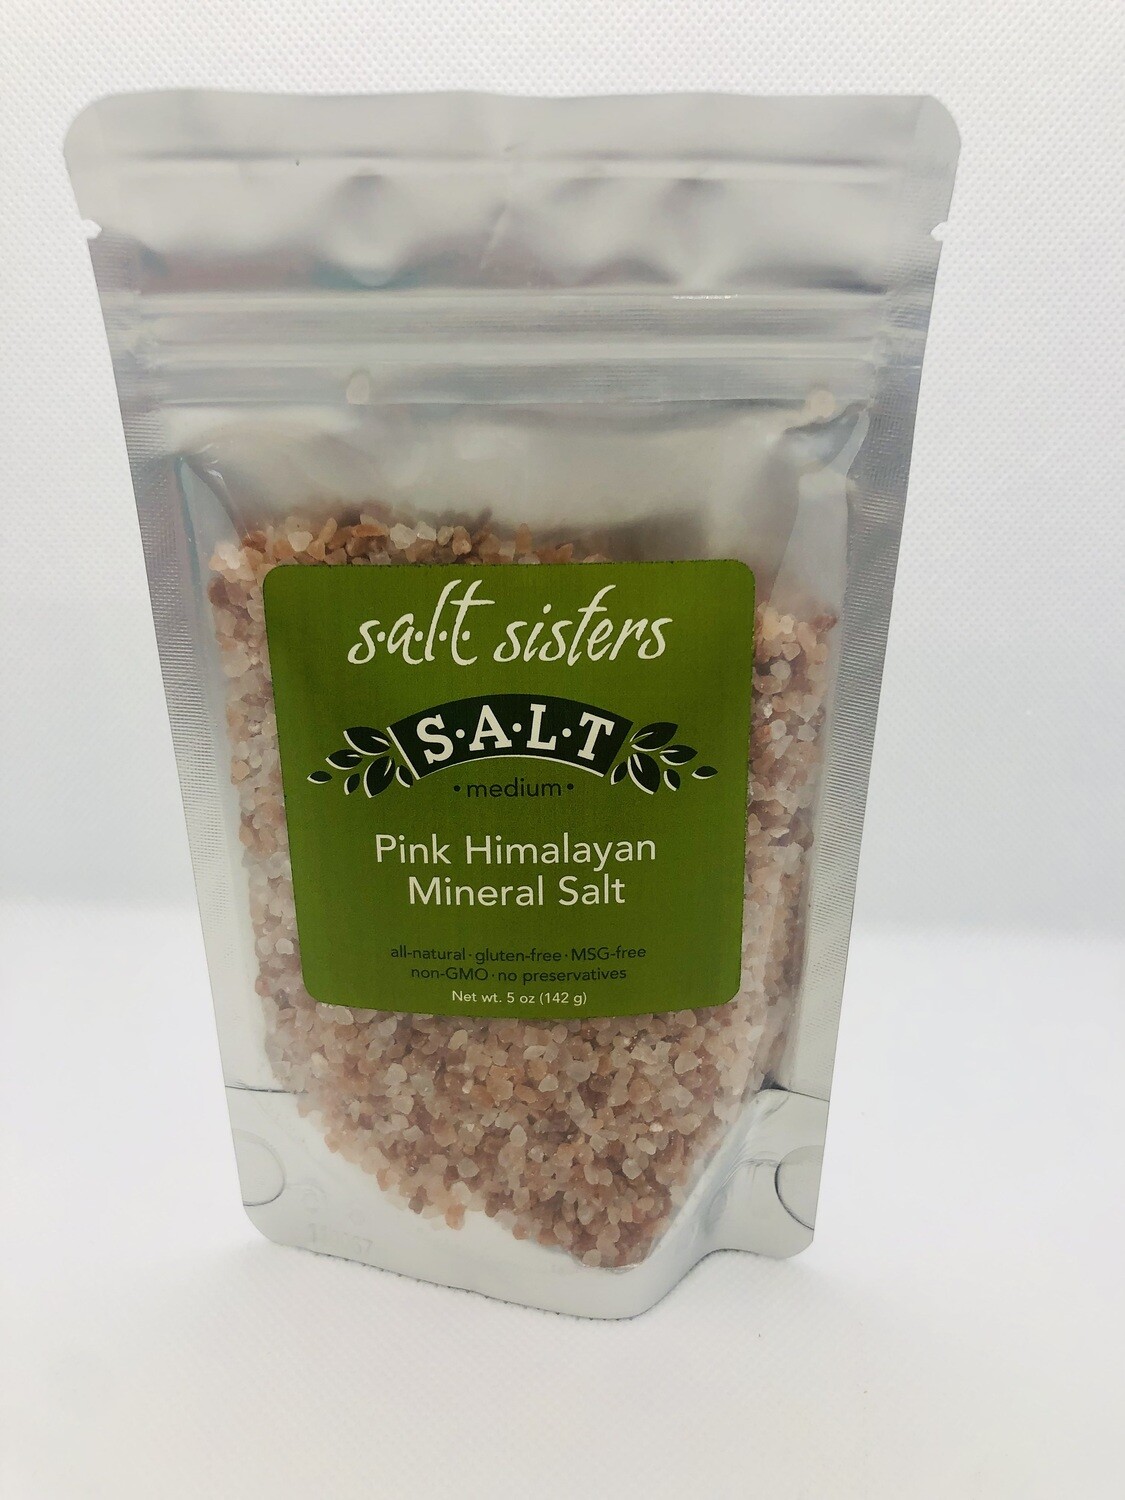 Pink Himalayan Mineral Salt, Medium